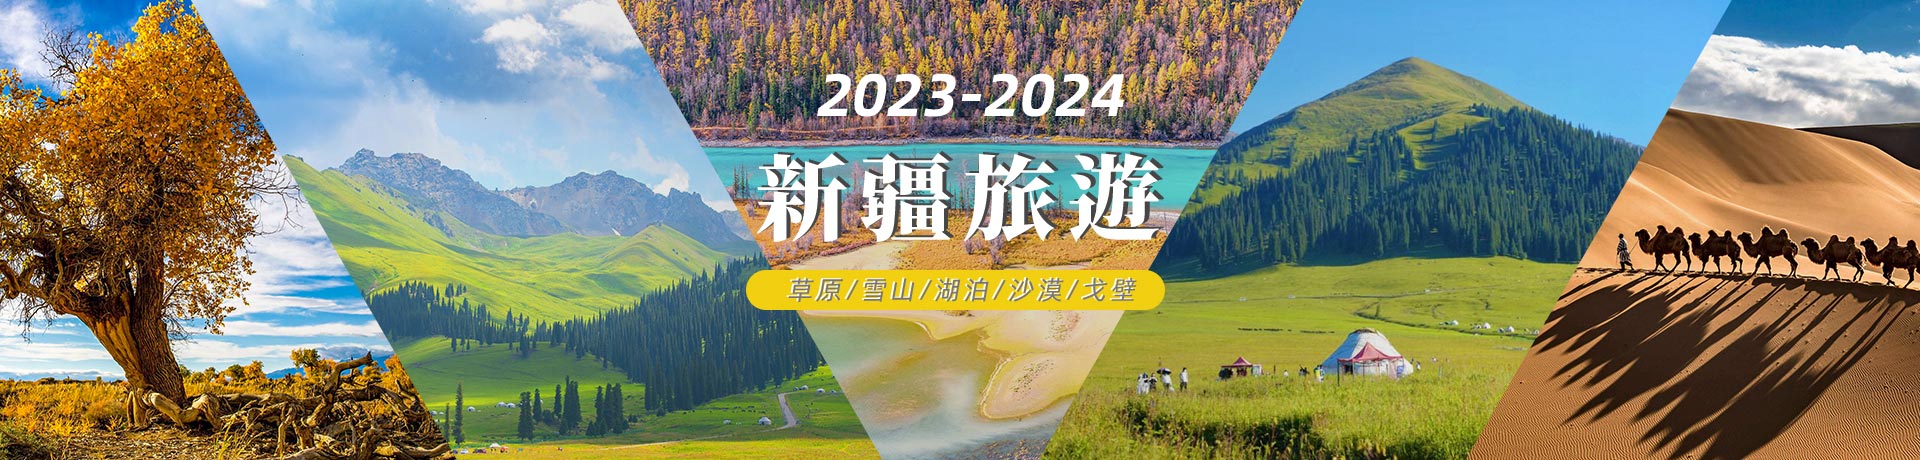 2023/2024新疆熱門跟團遊